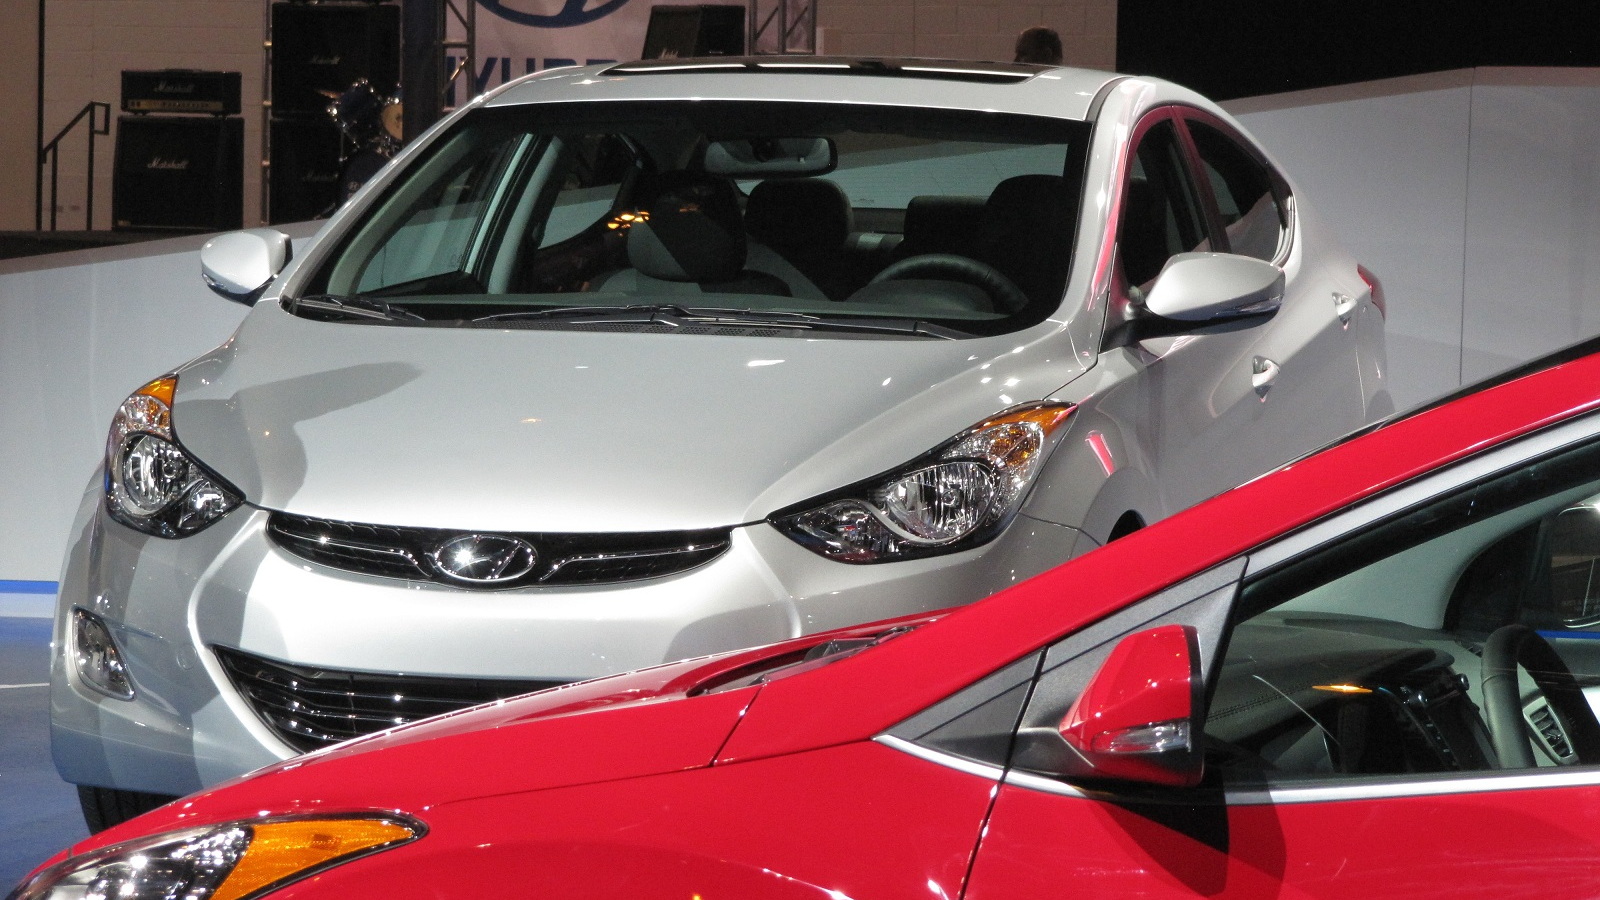 2013 Hyundai Elantra Coupe, Chicago Auto Show, Jan 2012